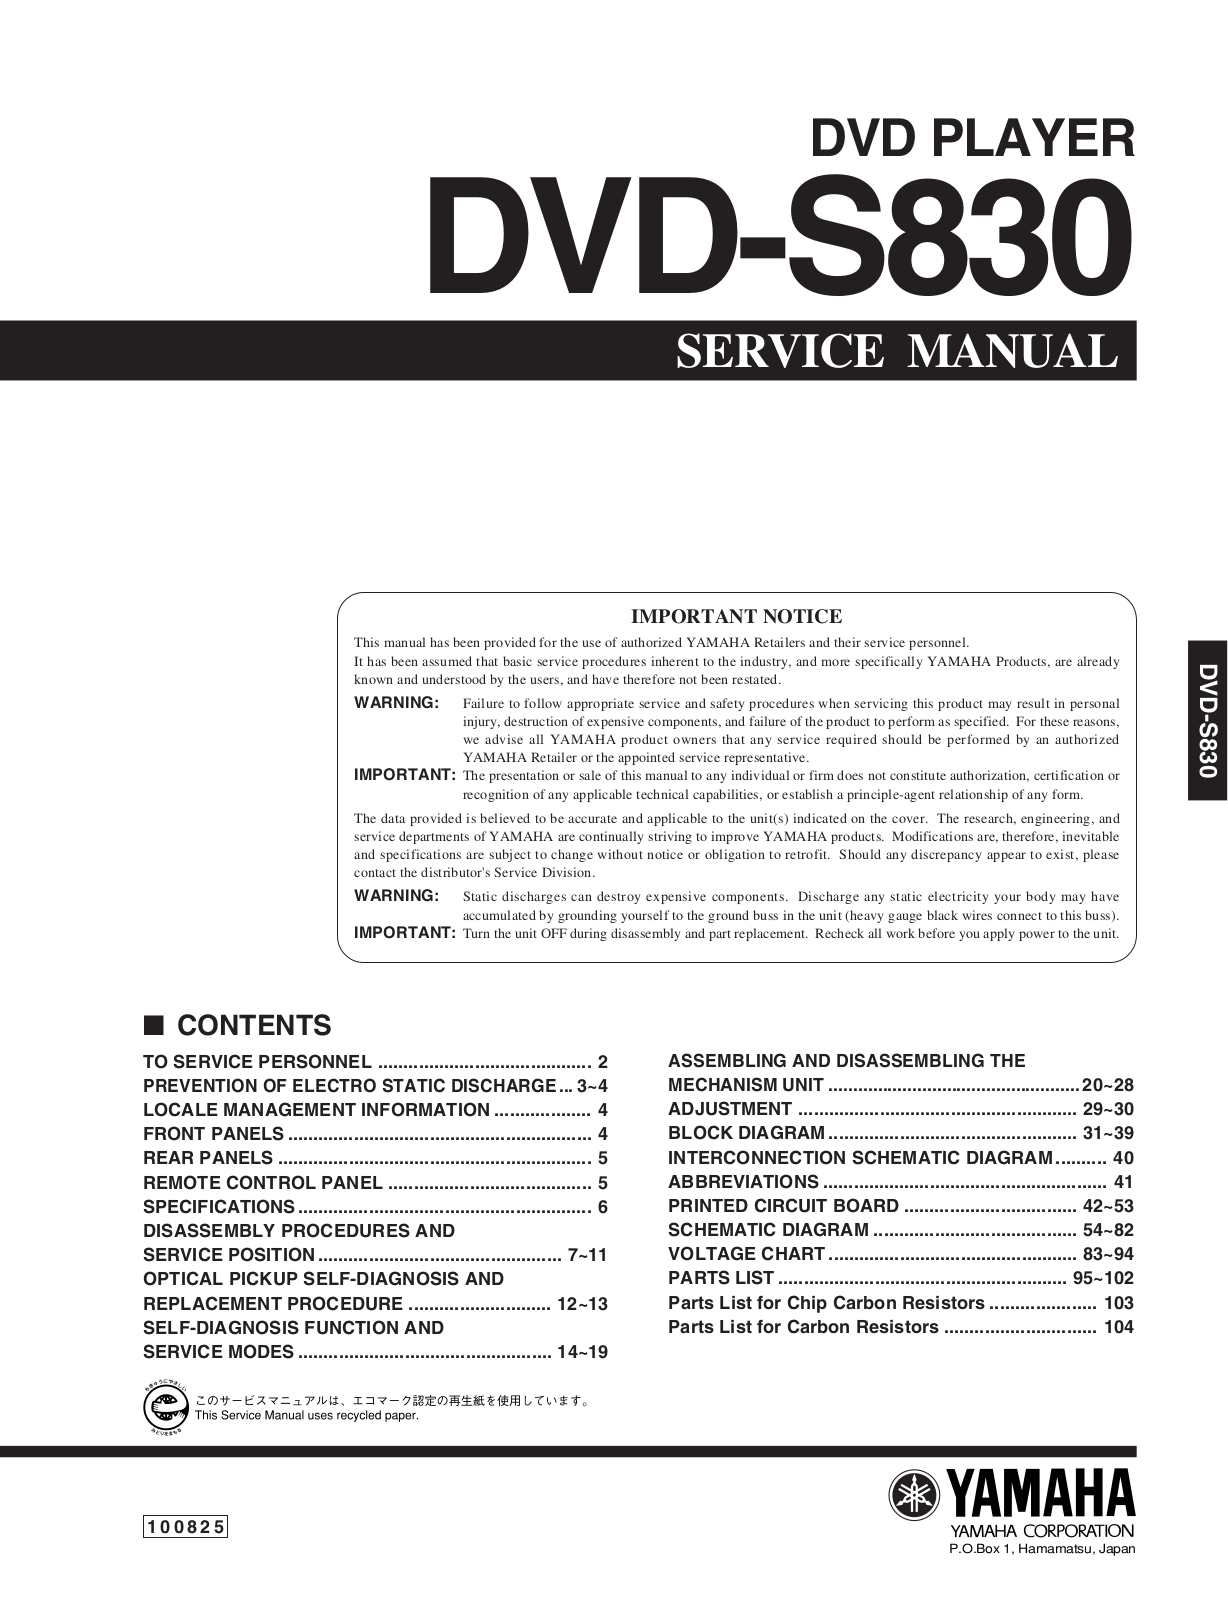 Yamaha DVDS-830 Service manual